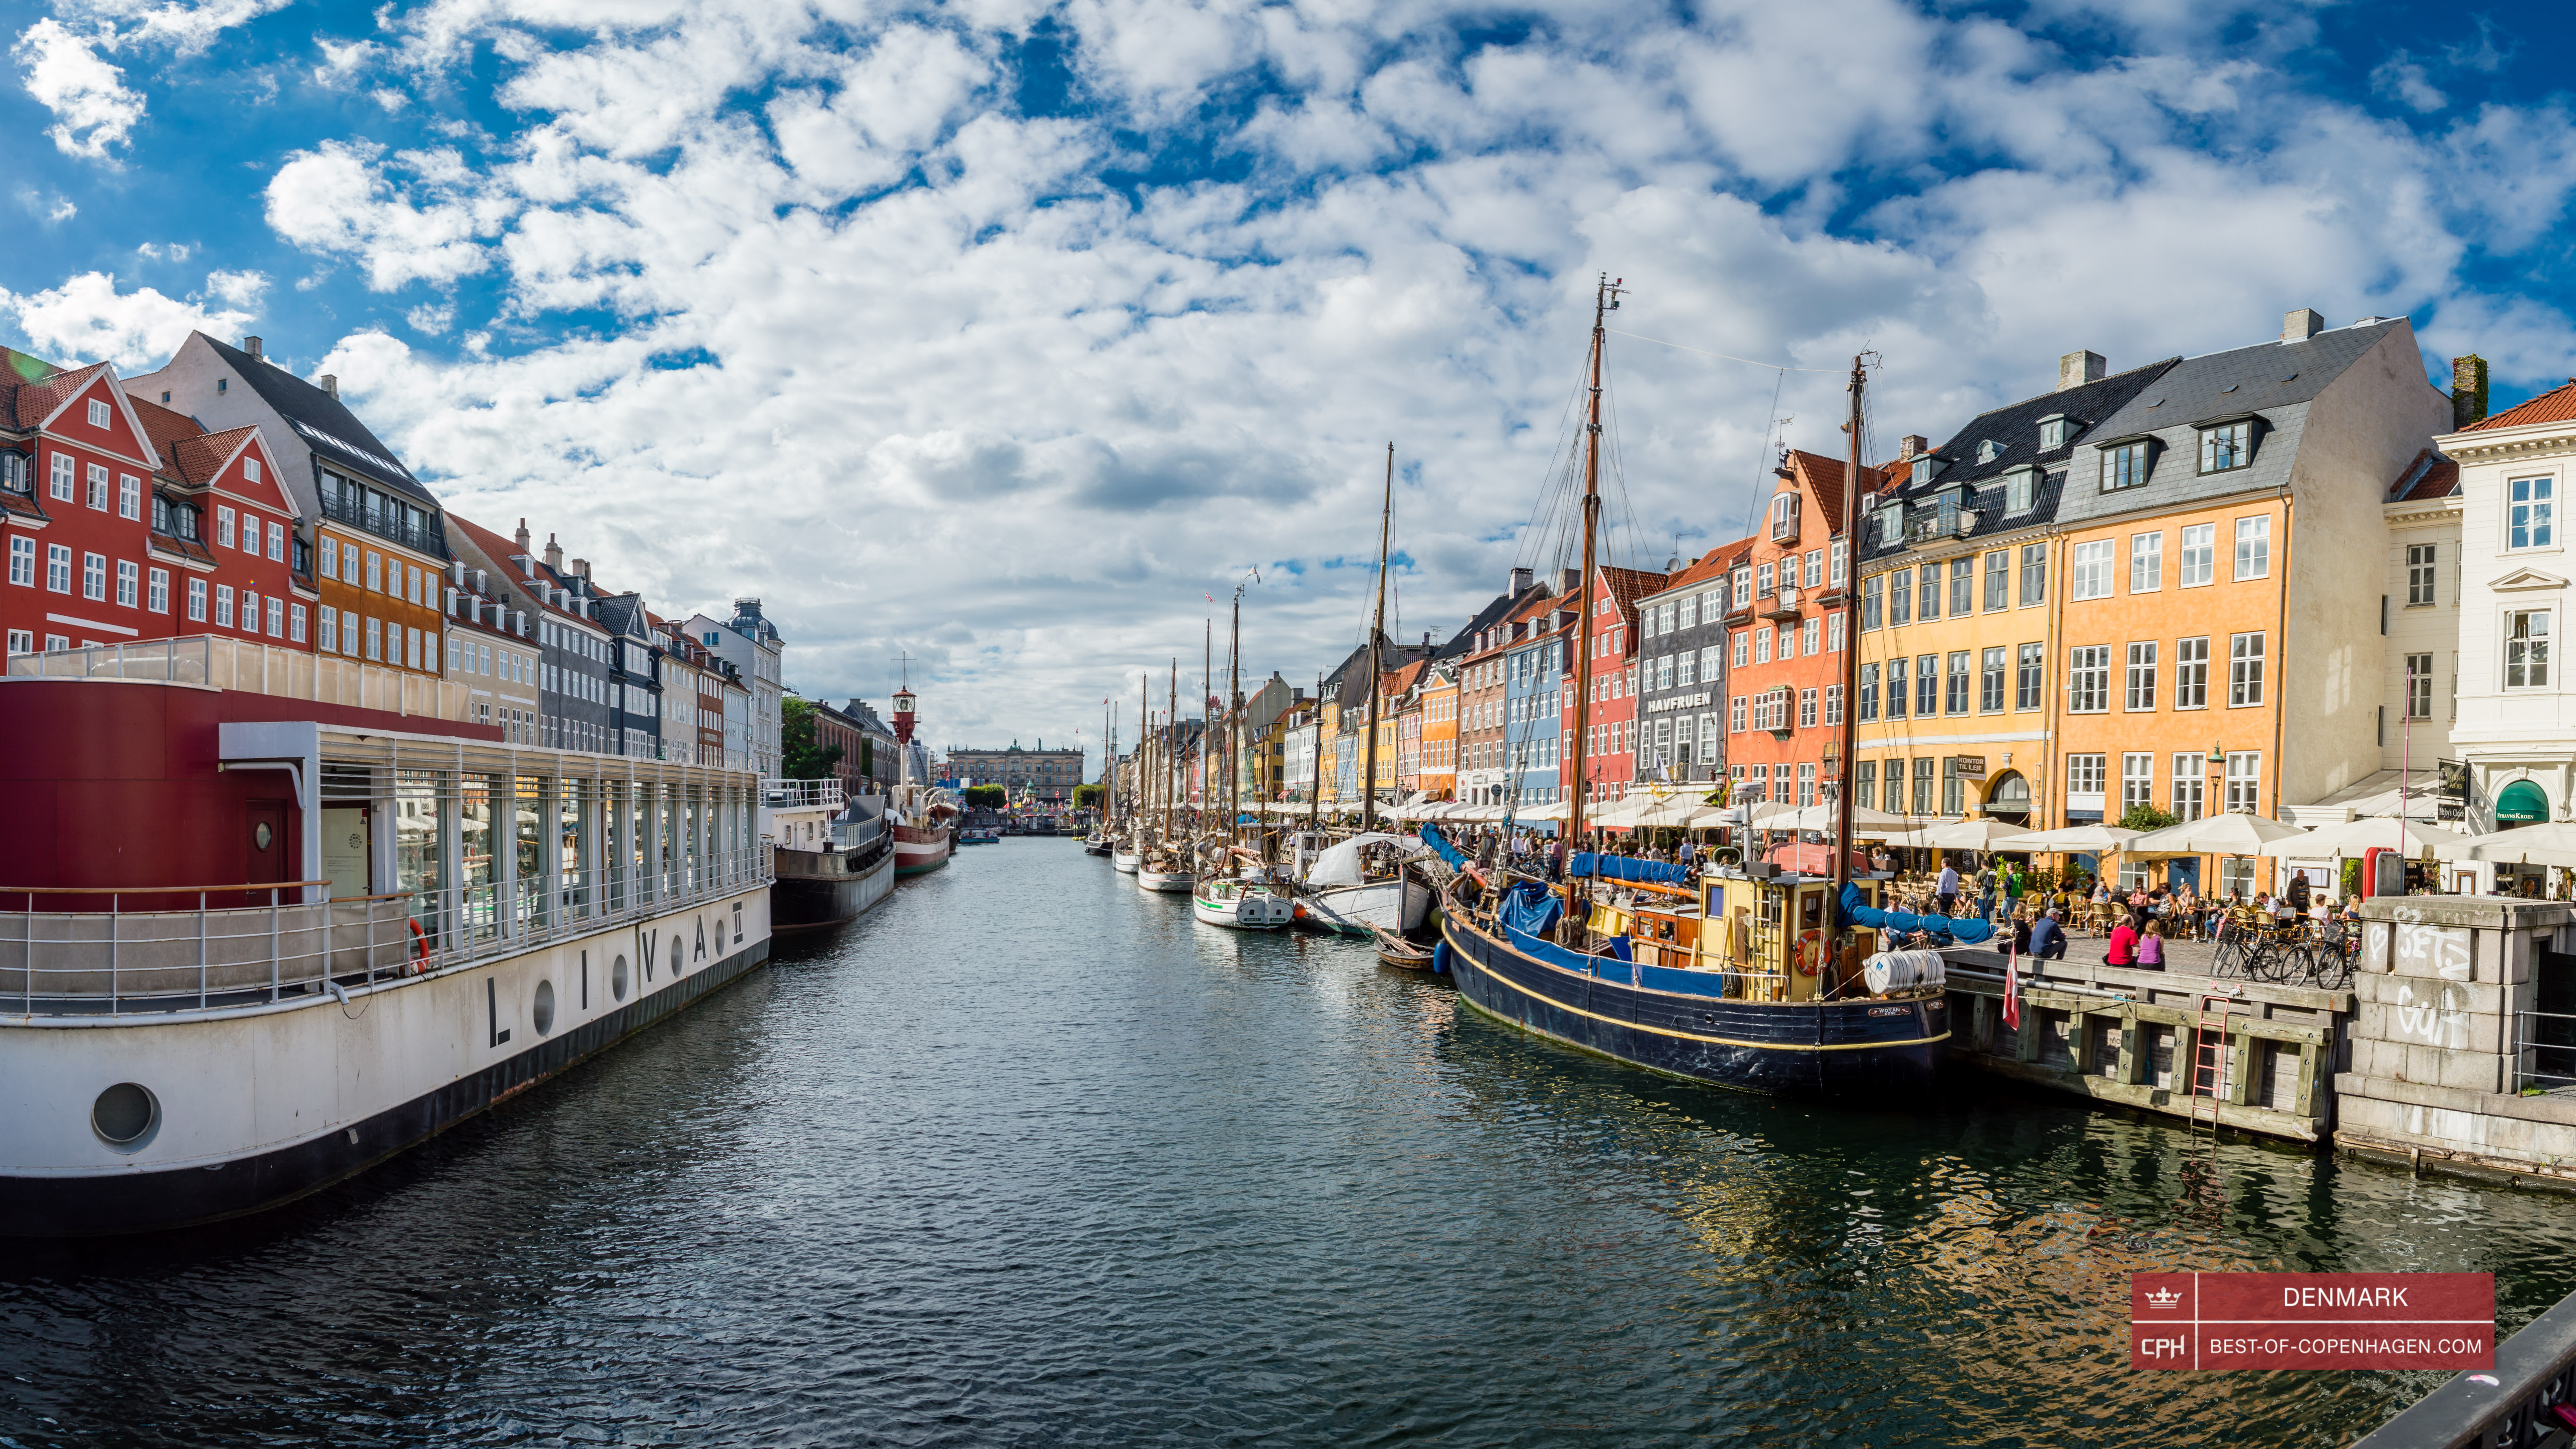 Нугавн і його яскраво пофарбовані будинки, Копенгаген, Данія